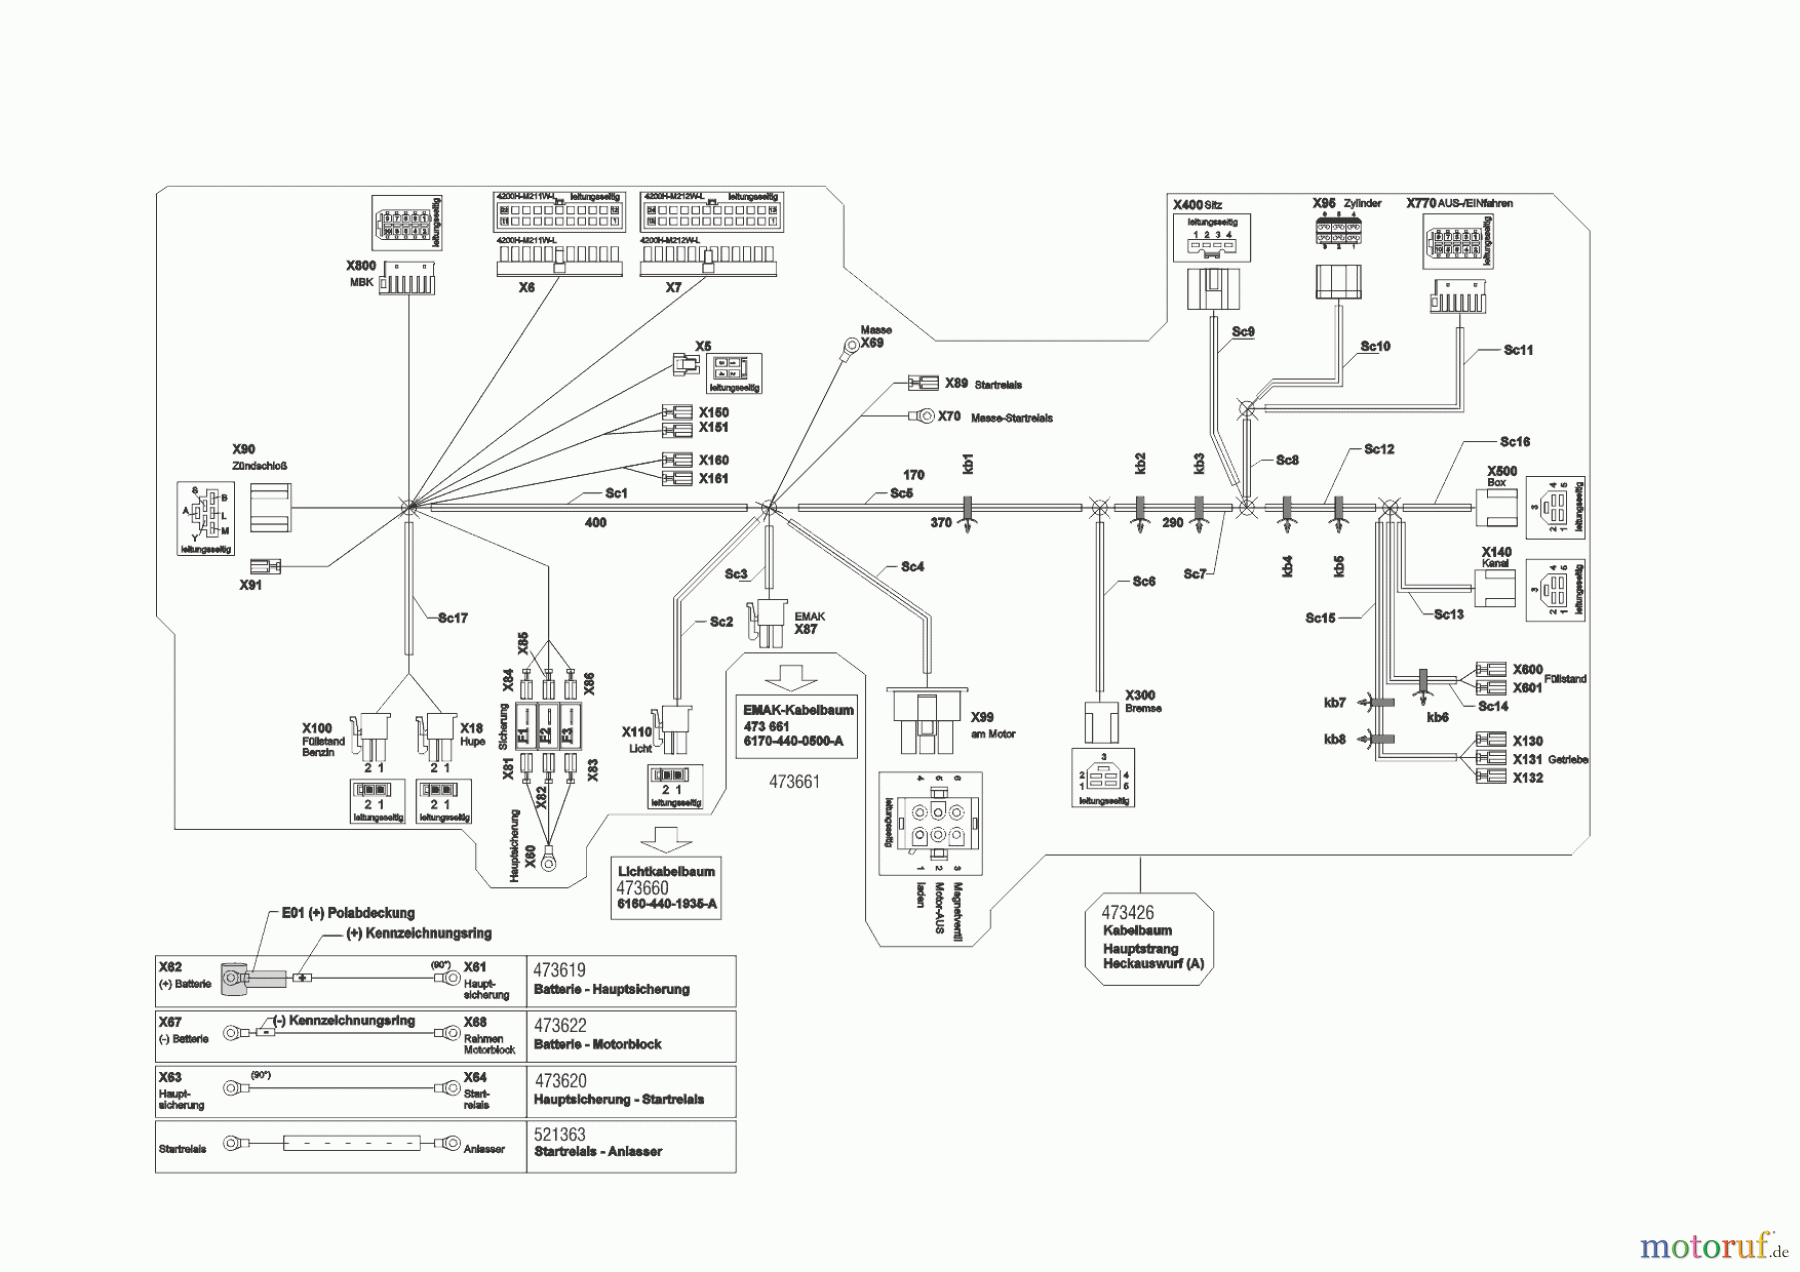  Powerline Gartentechnik Rasentraktor  T23-125.4 HD V2  ab 09/2016 Seite 10